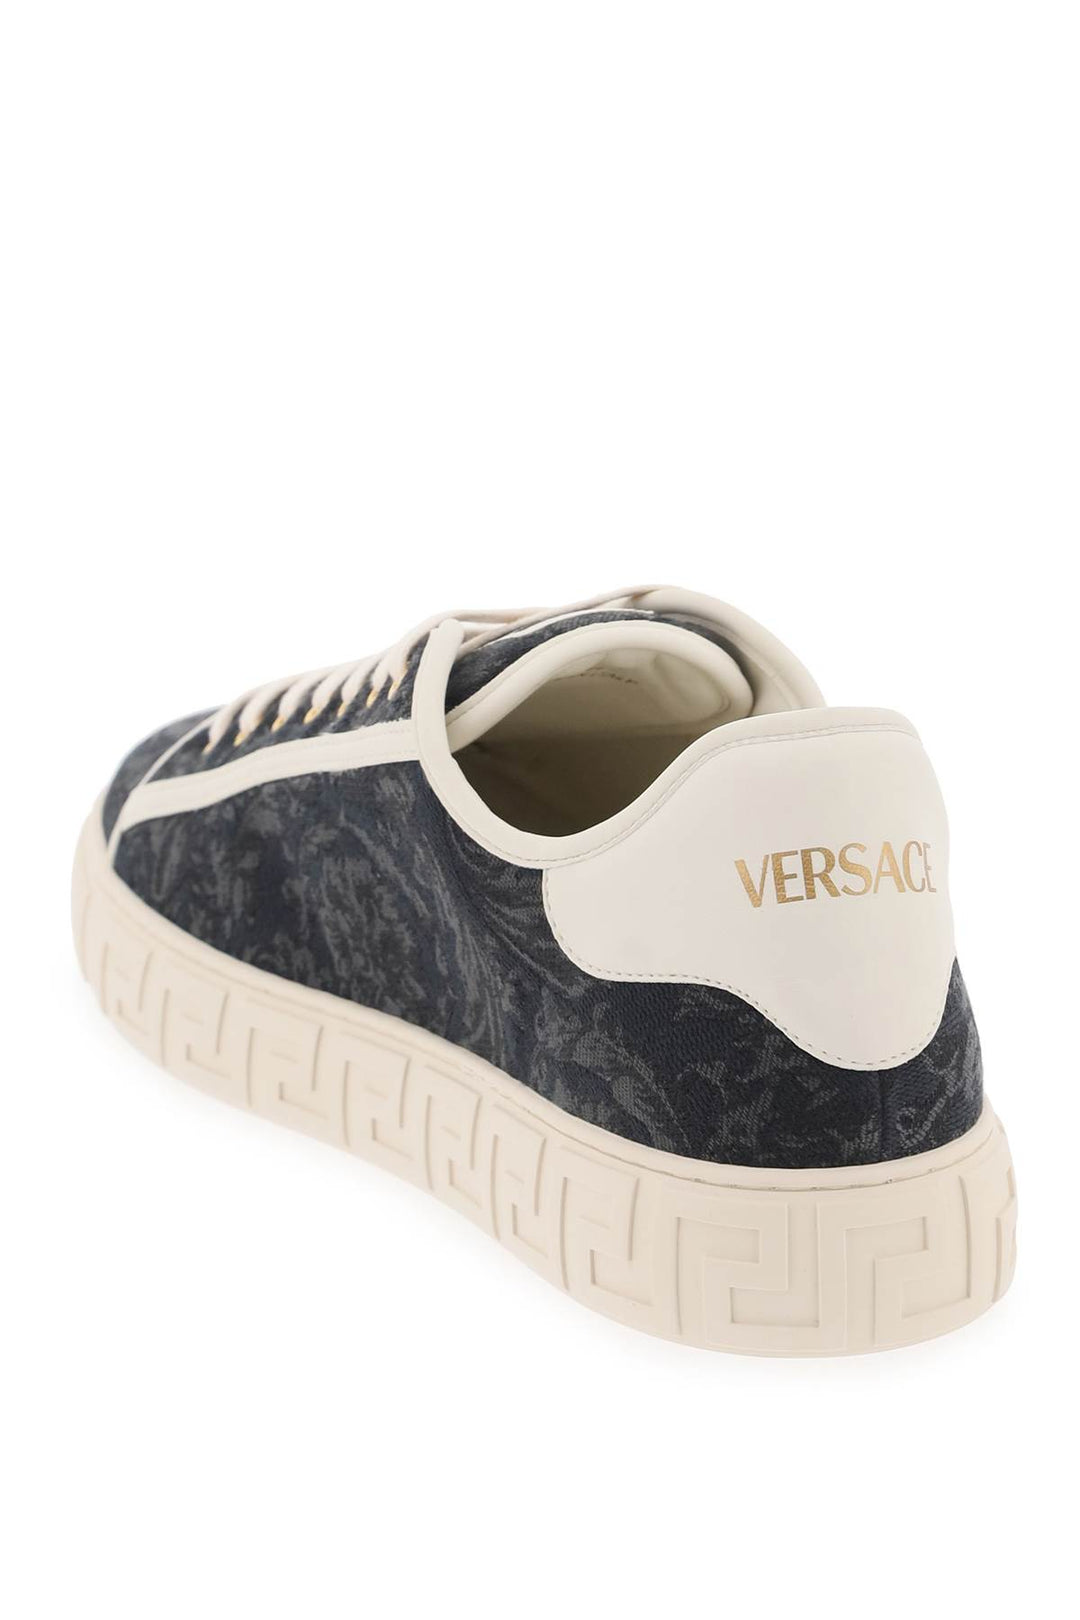 Versace Baroque Greek Sneakers   Nero